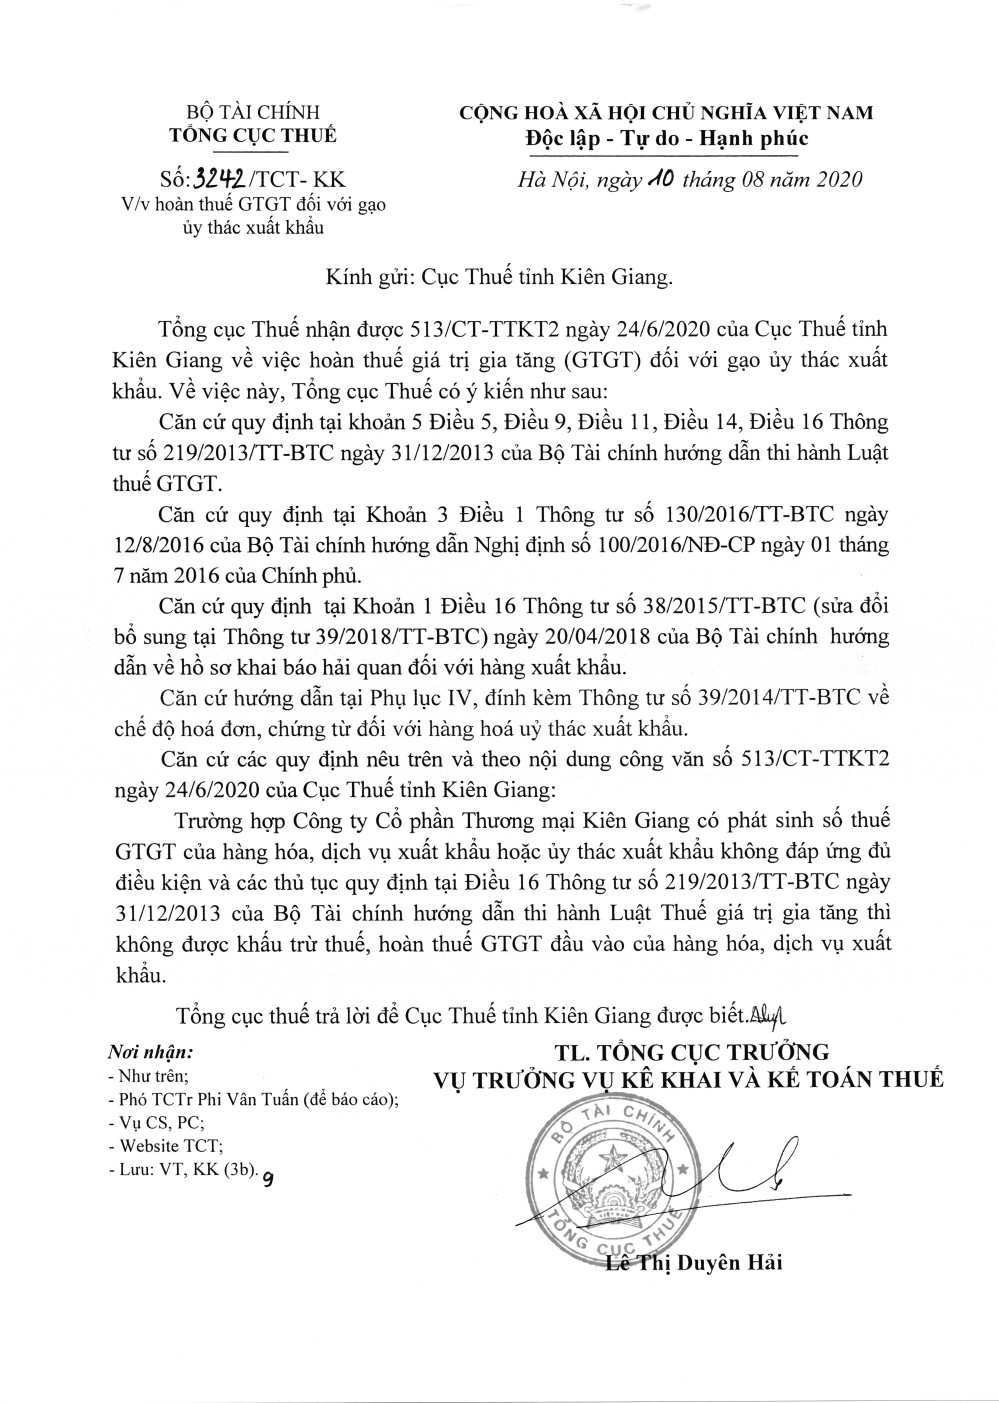 Công văn số 3242/TCT-KK của Tổng cục Thuế 10/08/2020 v/v hoàn thuế GTGT đối với gạo uỷ thác xuất khẩu